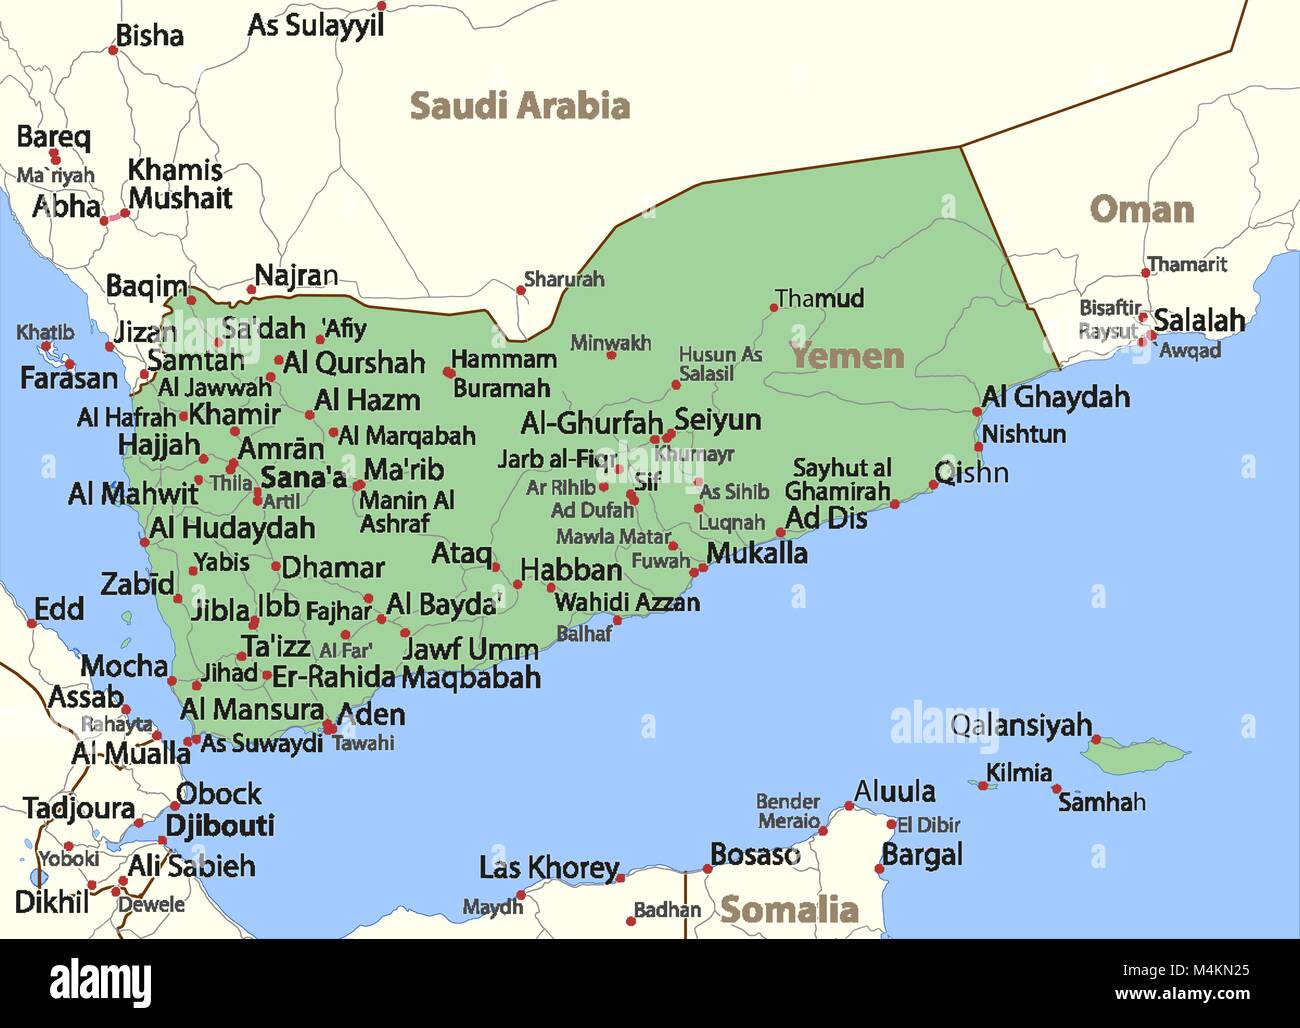 Karte von Jemen. Zeigt die Ländergrenzen, Ortsnamen und Straßen. Beschriftungen in Englisch, wo dies möglich ist. Projektion: Mercator. Stock Vektor